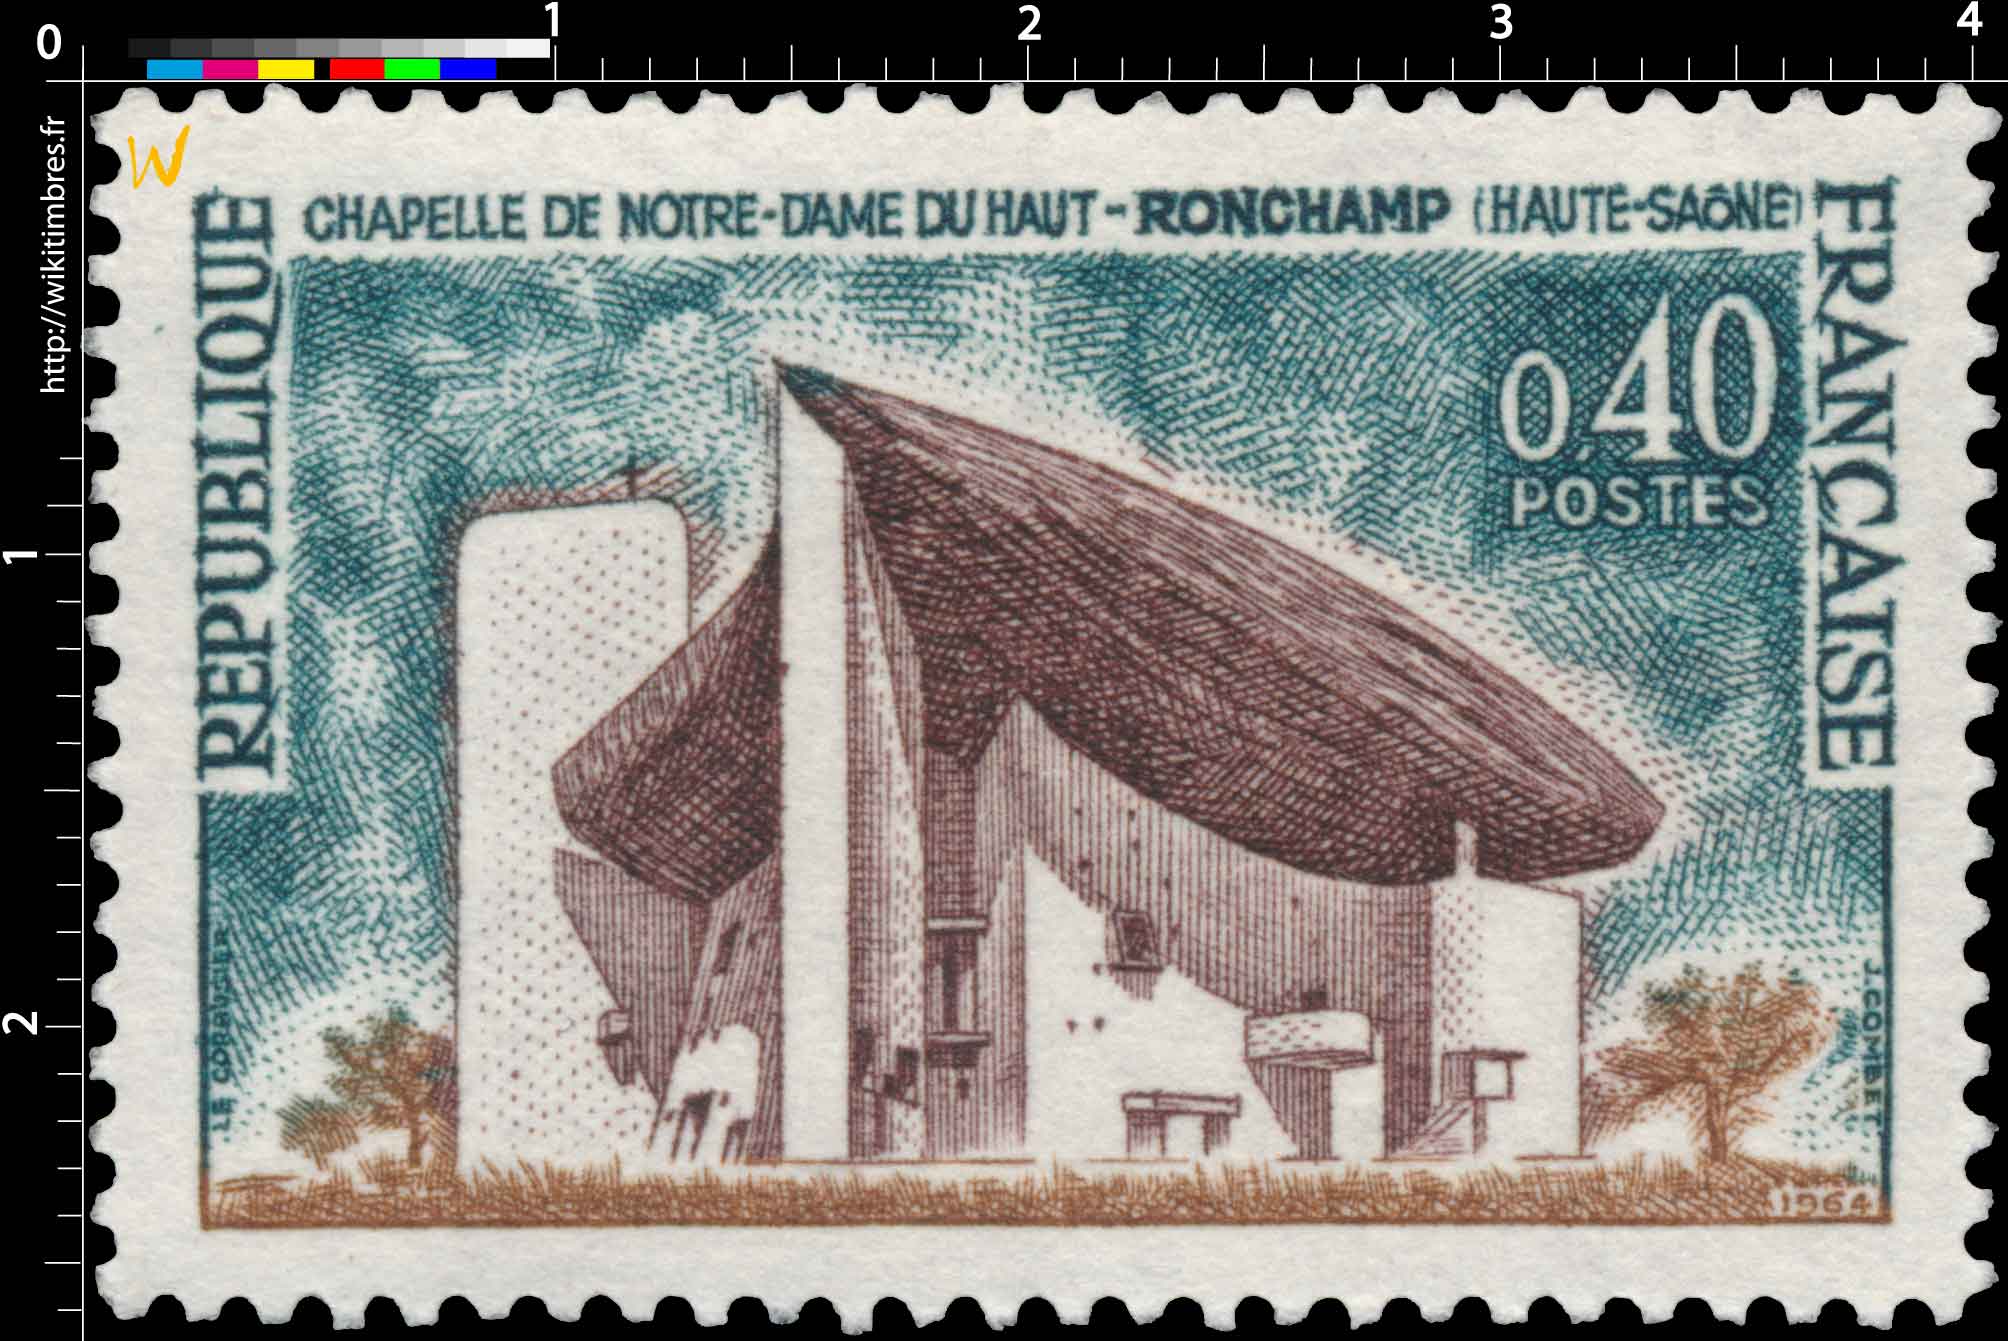 1964 CHAPELLE DE NOTRE-DAME DU HAUT DE RONCHAMP (HAUTE-SAÔNE)